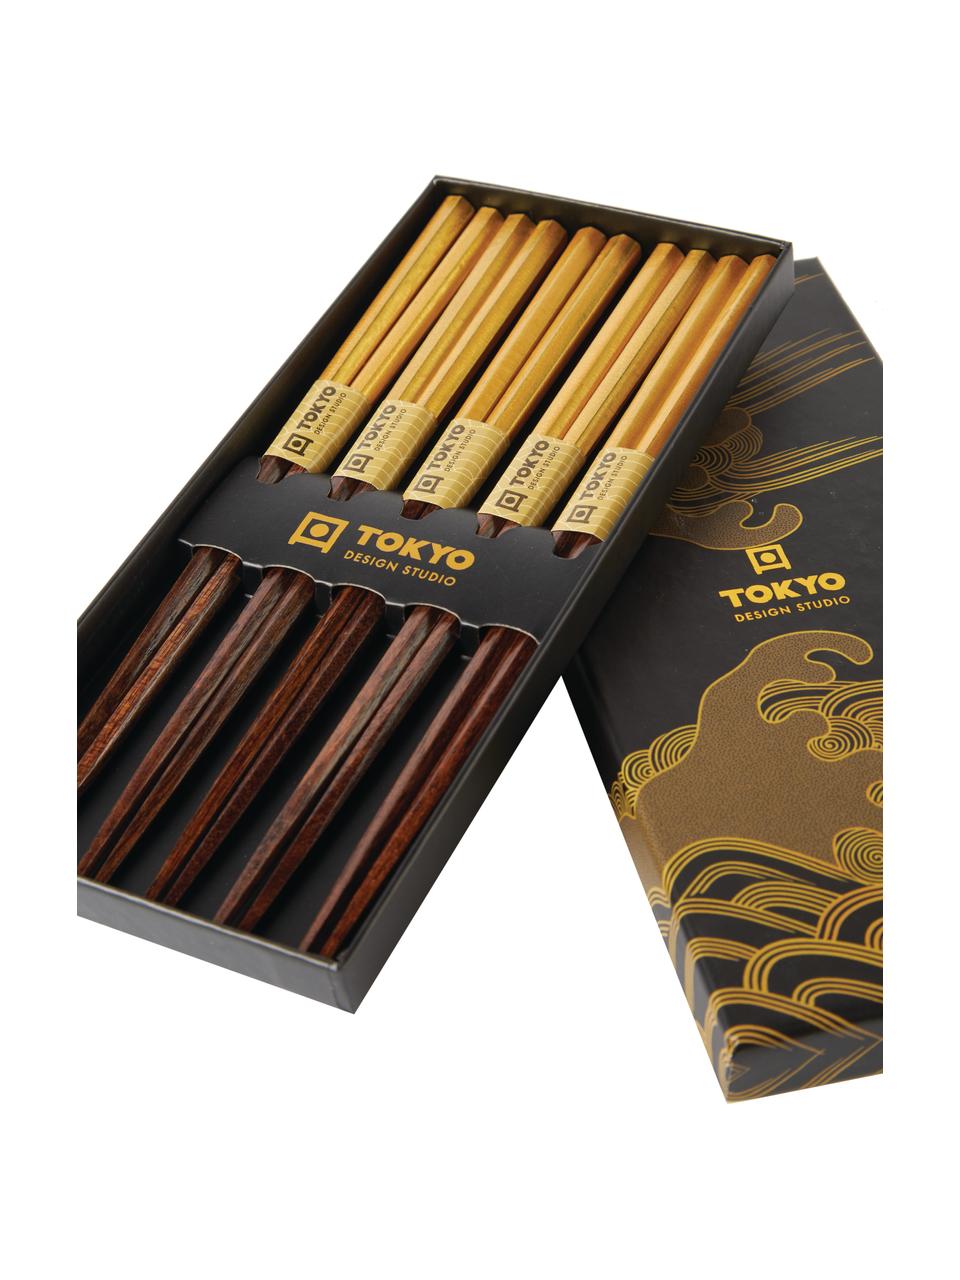 Palillos chinos de madera Ereganto, 5 pares, Madera, Marrón, dorado, L 23 cm